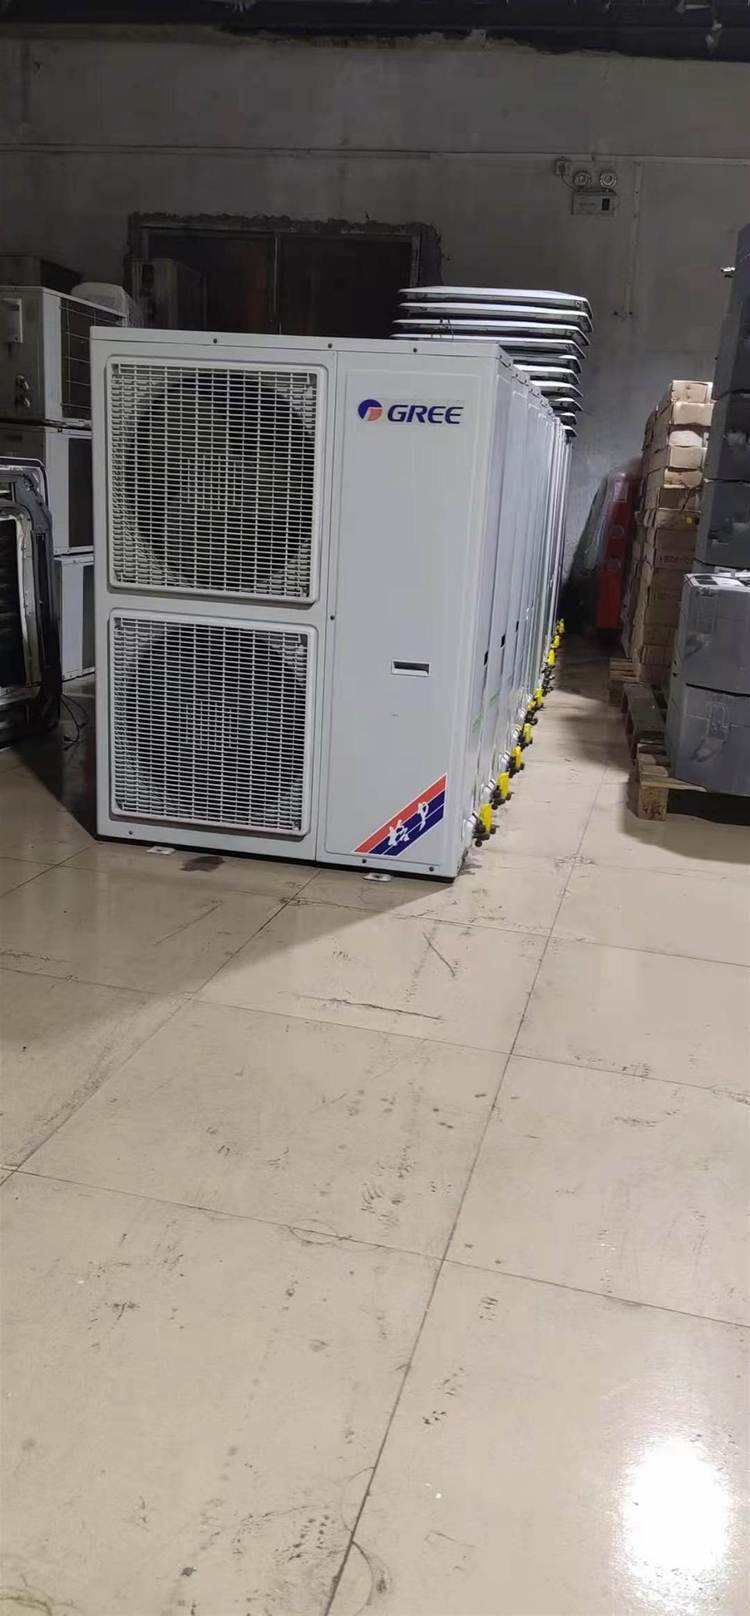 深圳市螺杆冷水机组回收 低温螺杆式冷水机处理 嵌入式空调高价收购拆卸